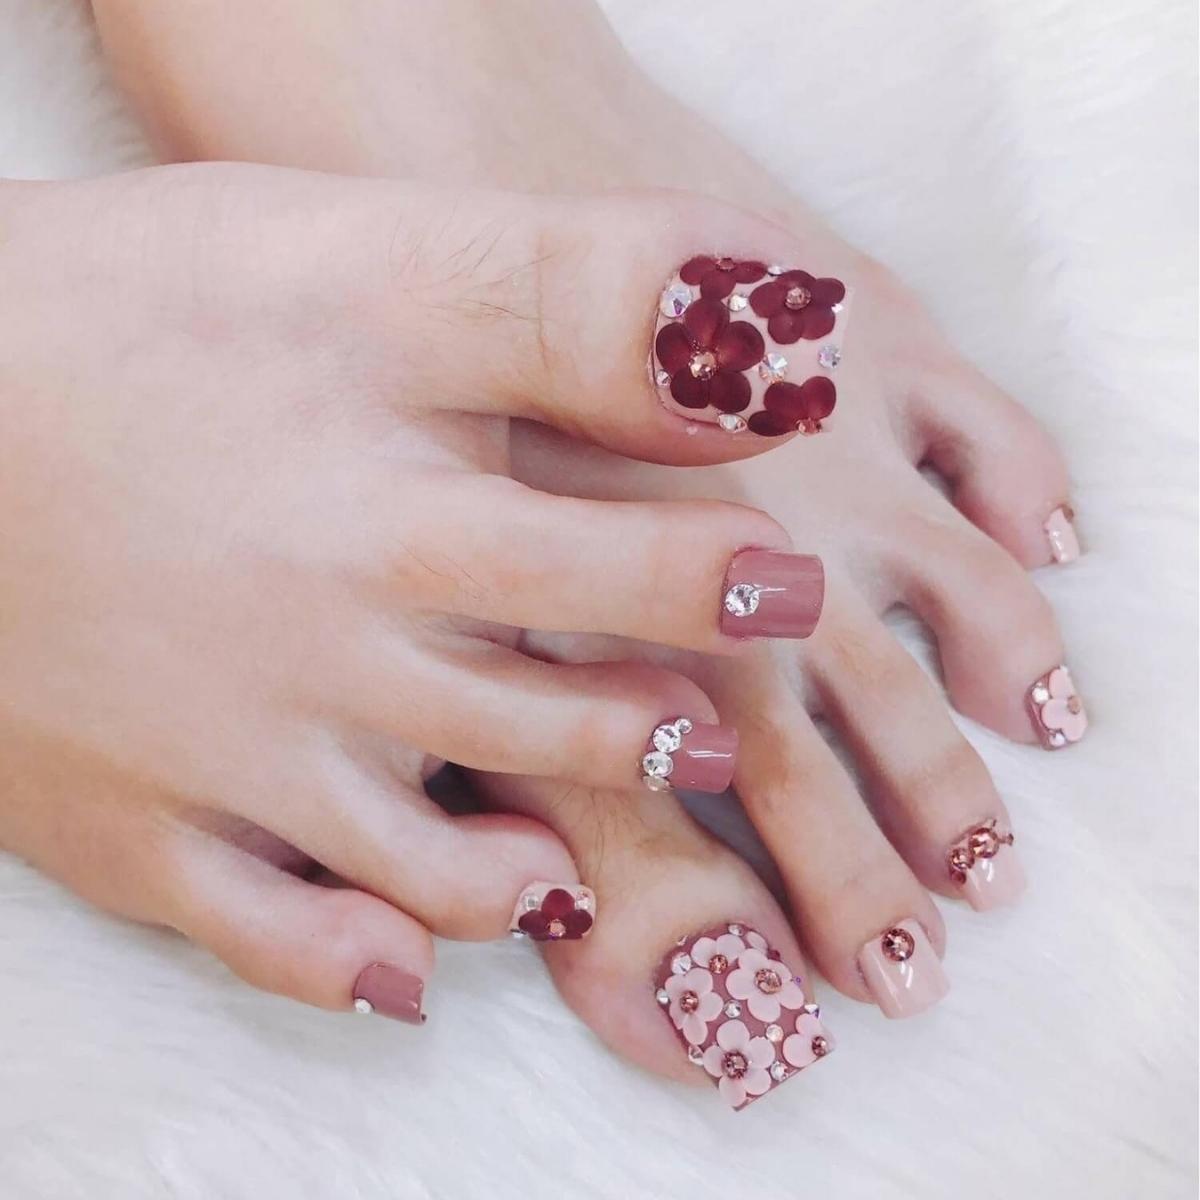 Nail chân color hồng nhạt nhẽo đính kèm đá hình hoa cute 